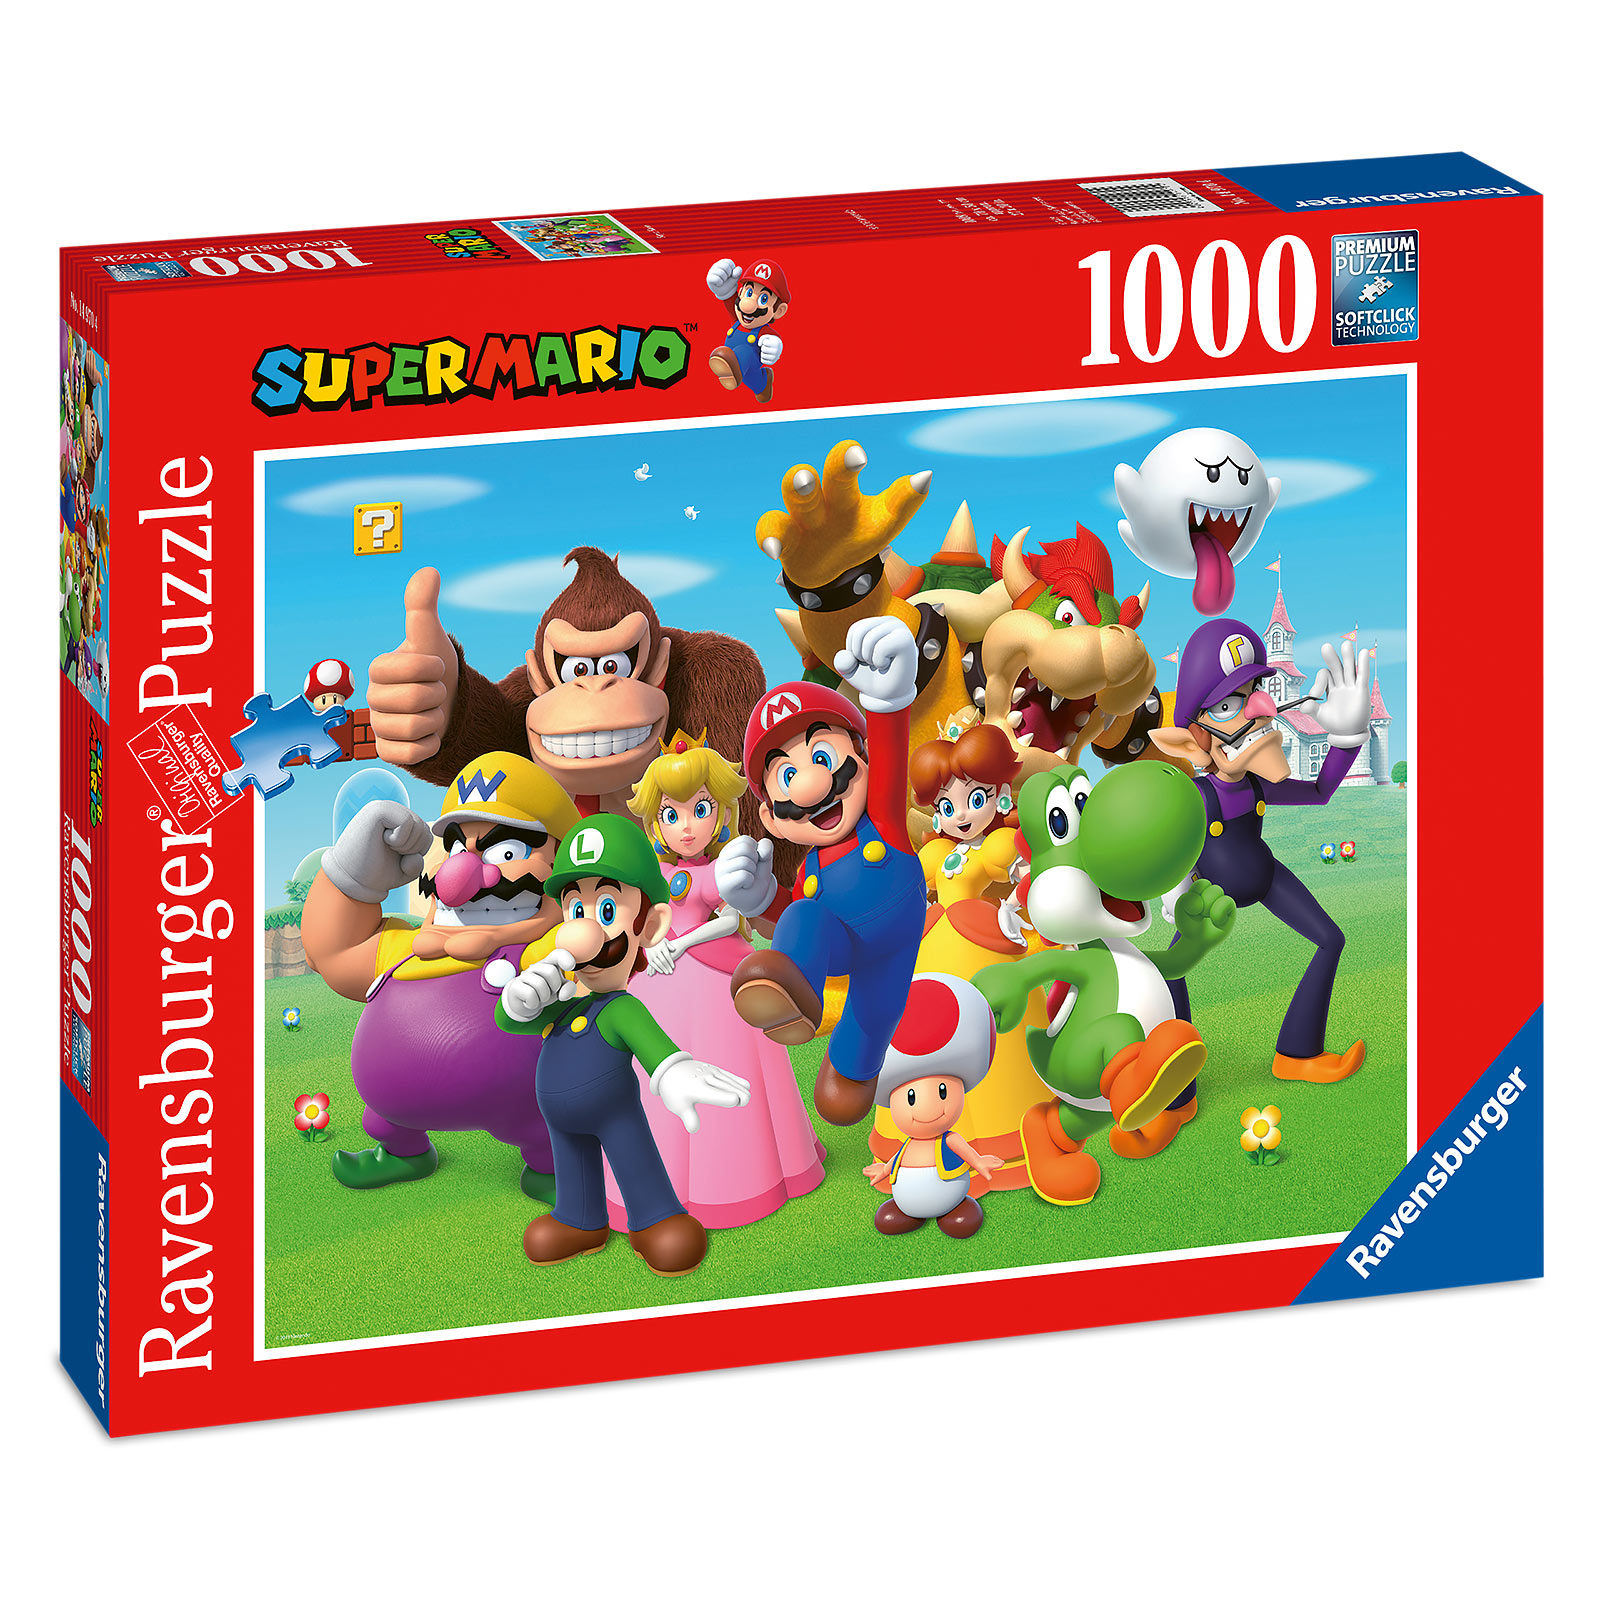 Super Mario - Group Puzzle